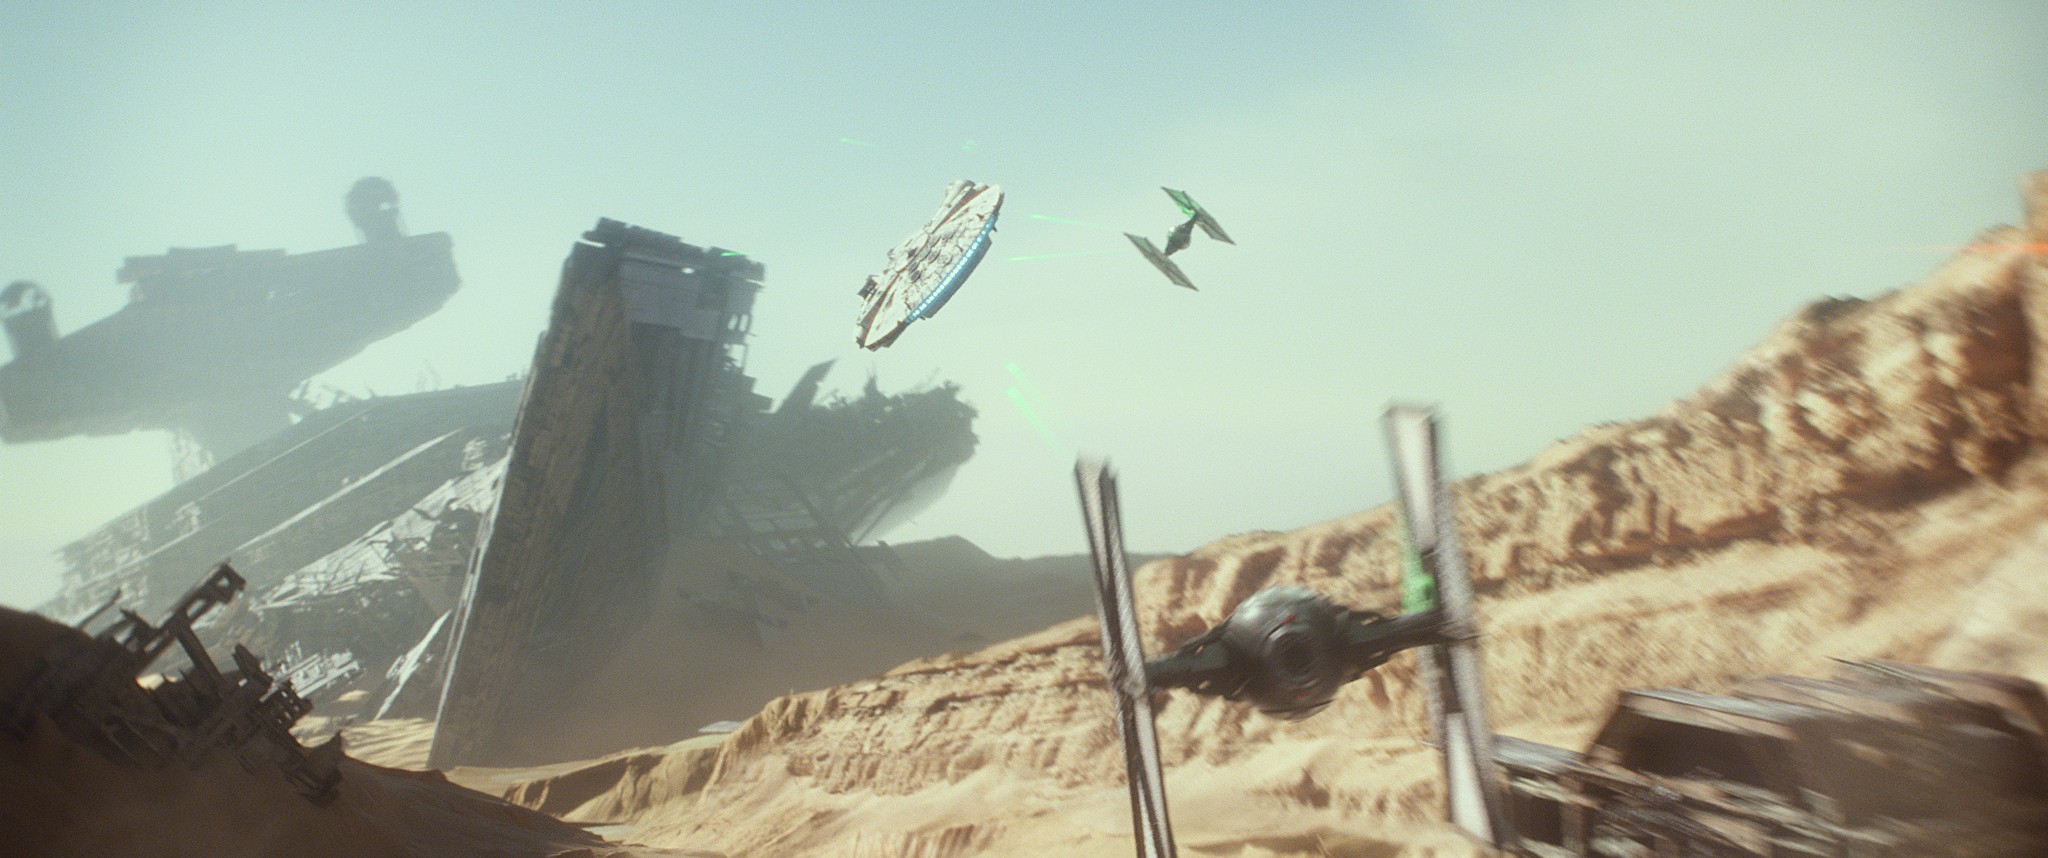 movie, star wars episode vii: the force awakens, millennium falcon, star wars, tie fighter